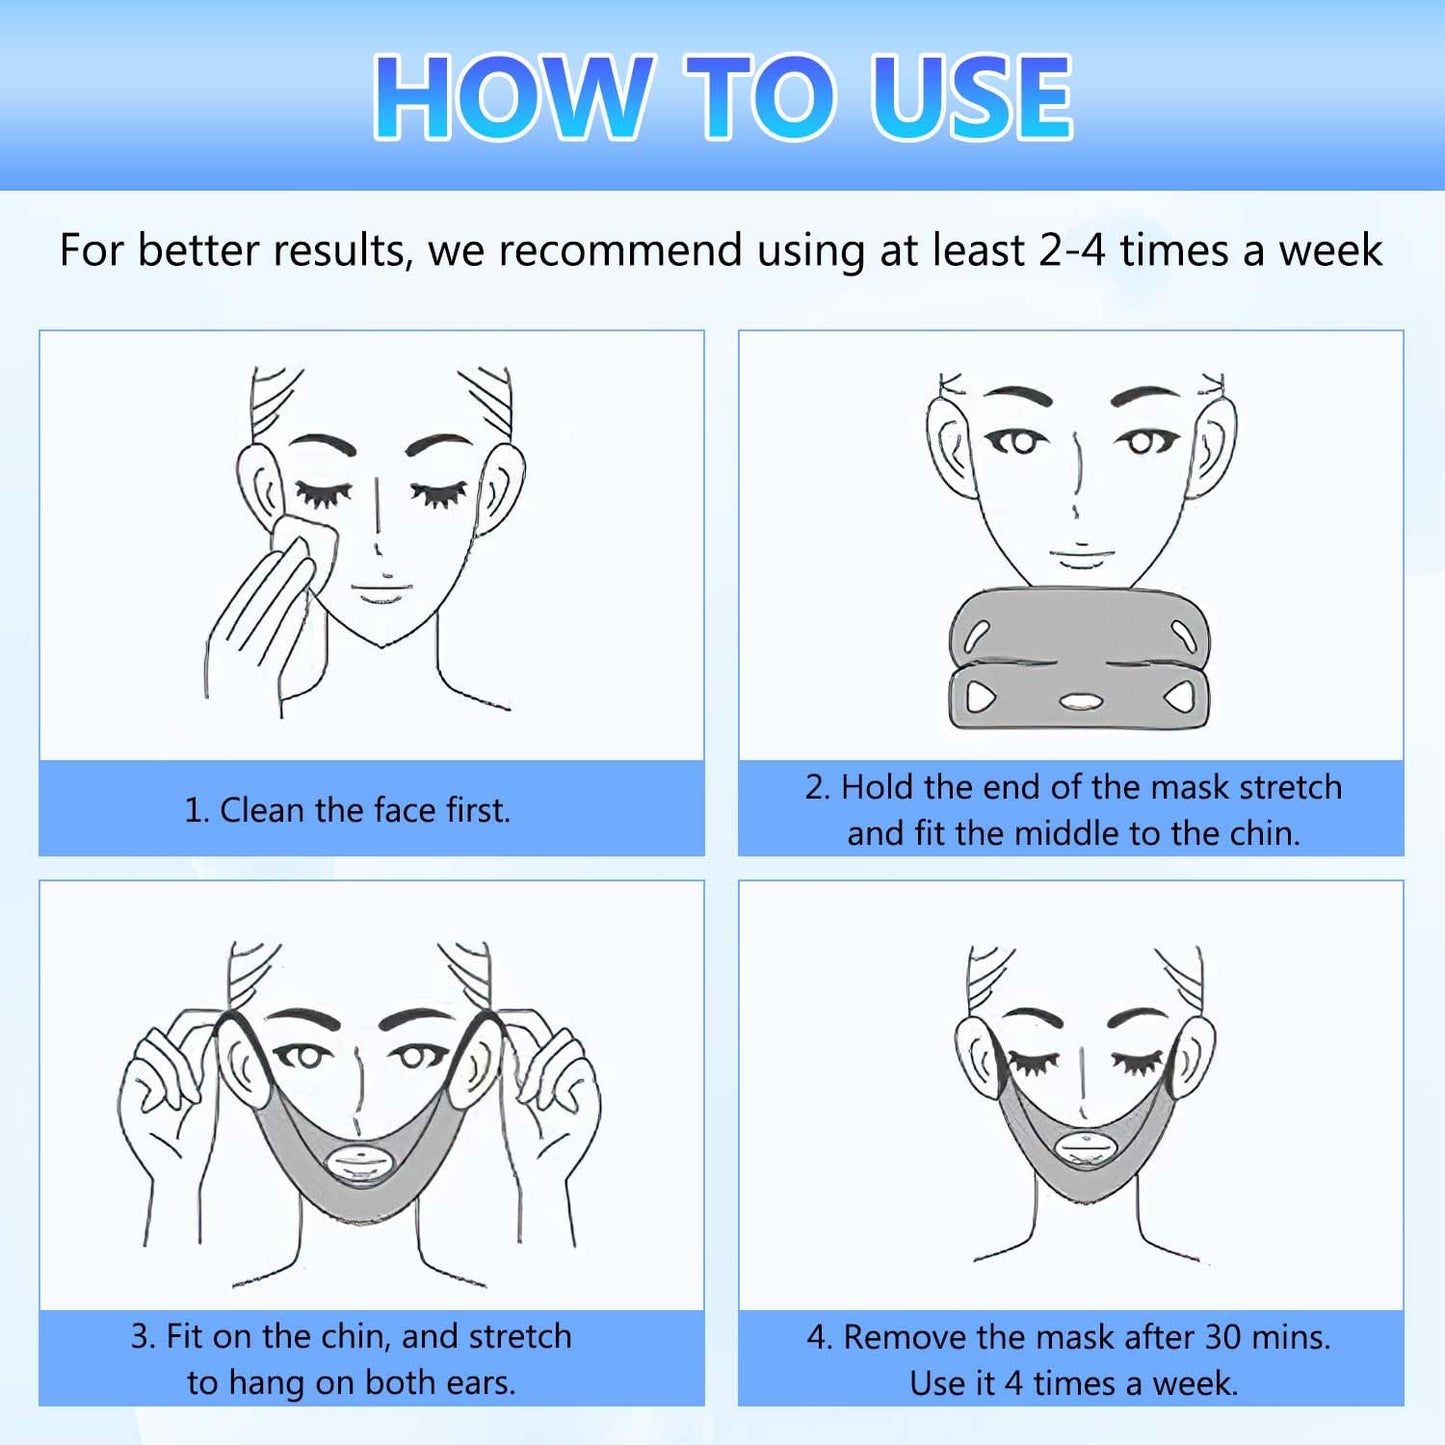 5PCS V Shape Face Lift Mask for All Skin Types